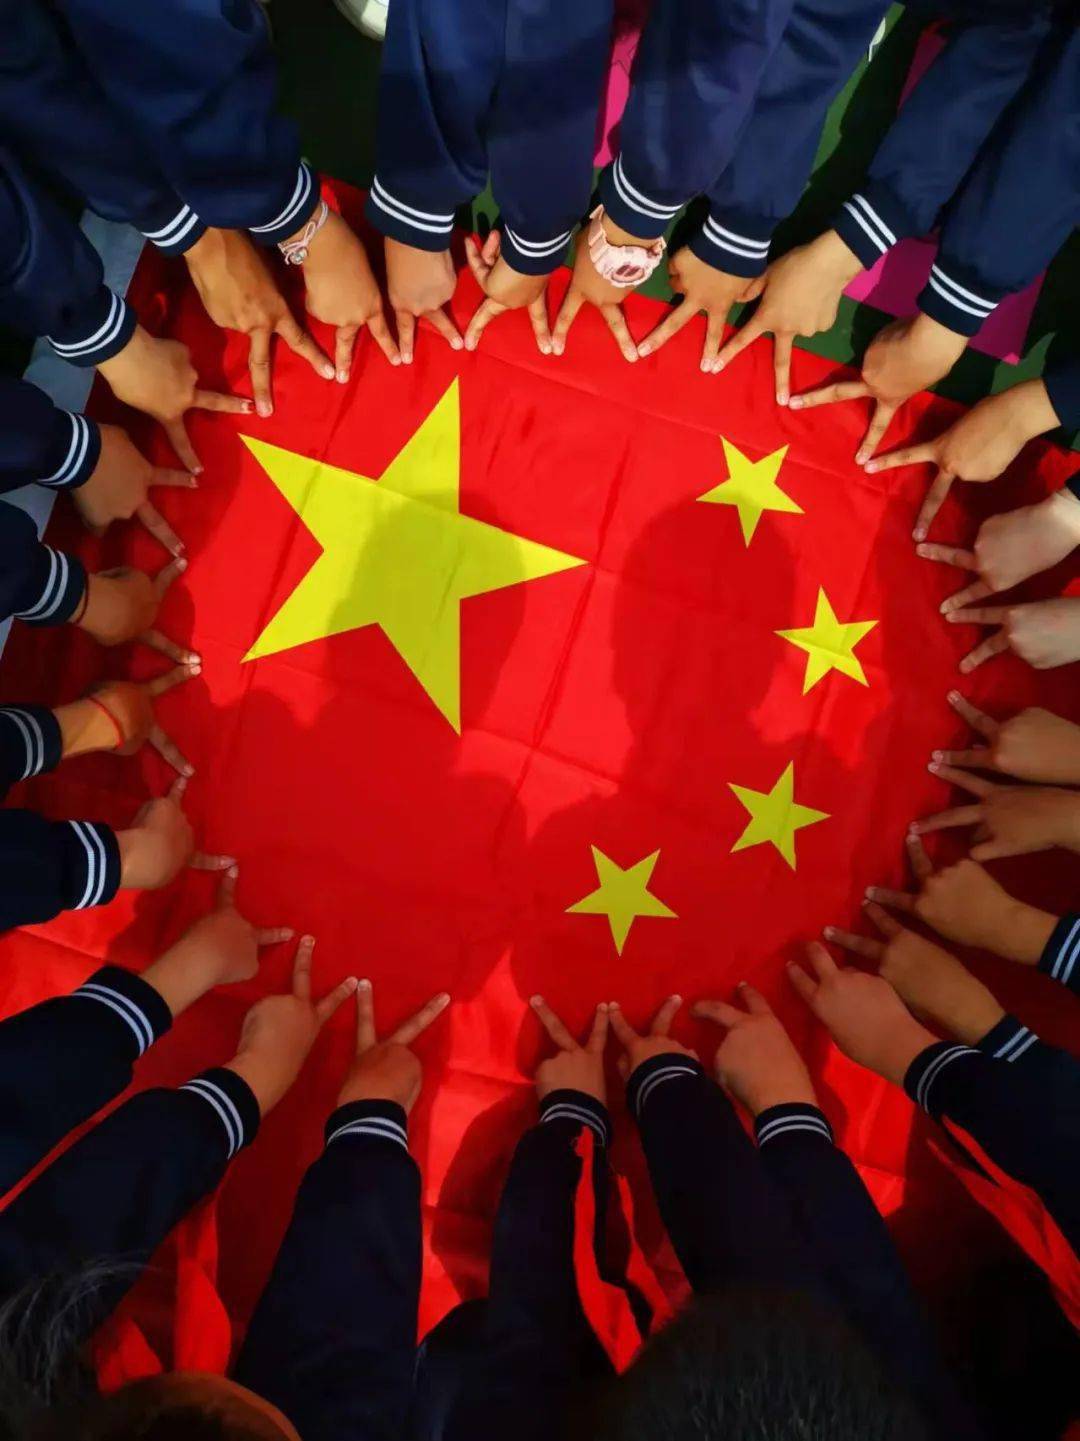 我爱你中国我在邢台和国旗同框向祖国表白